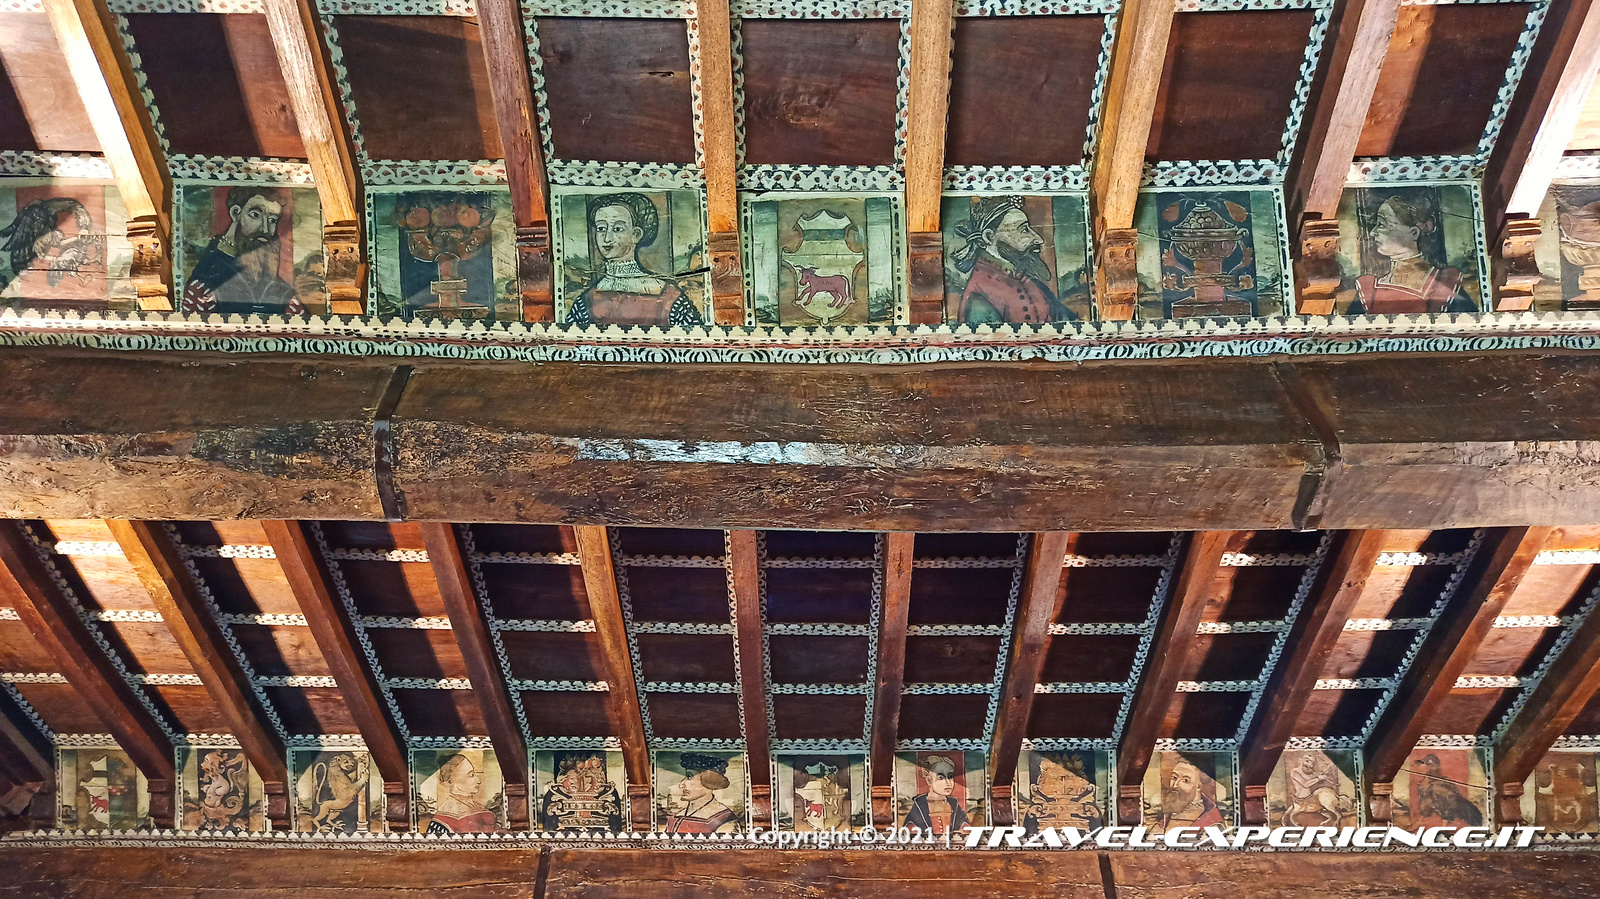 Particolare del soffitto della Sala delle Maschere del castello di Grinzane Cavour